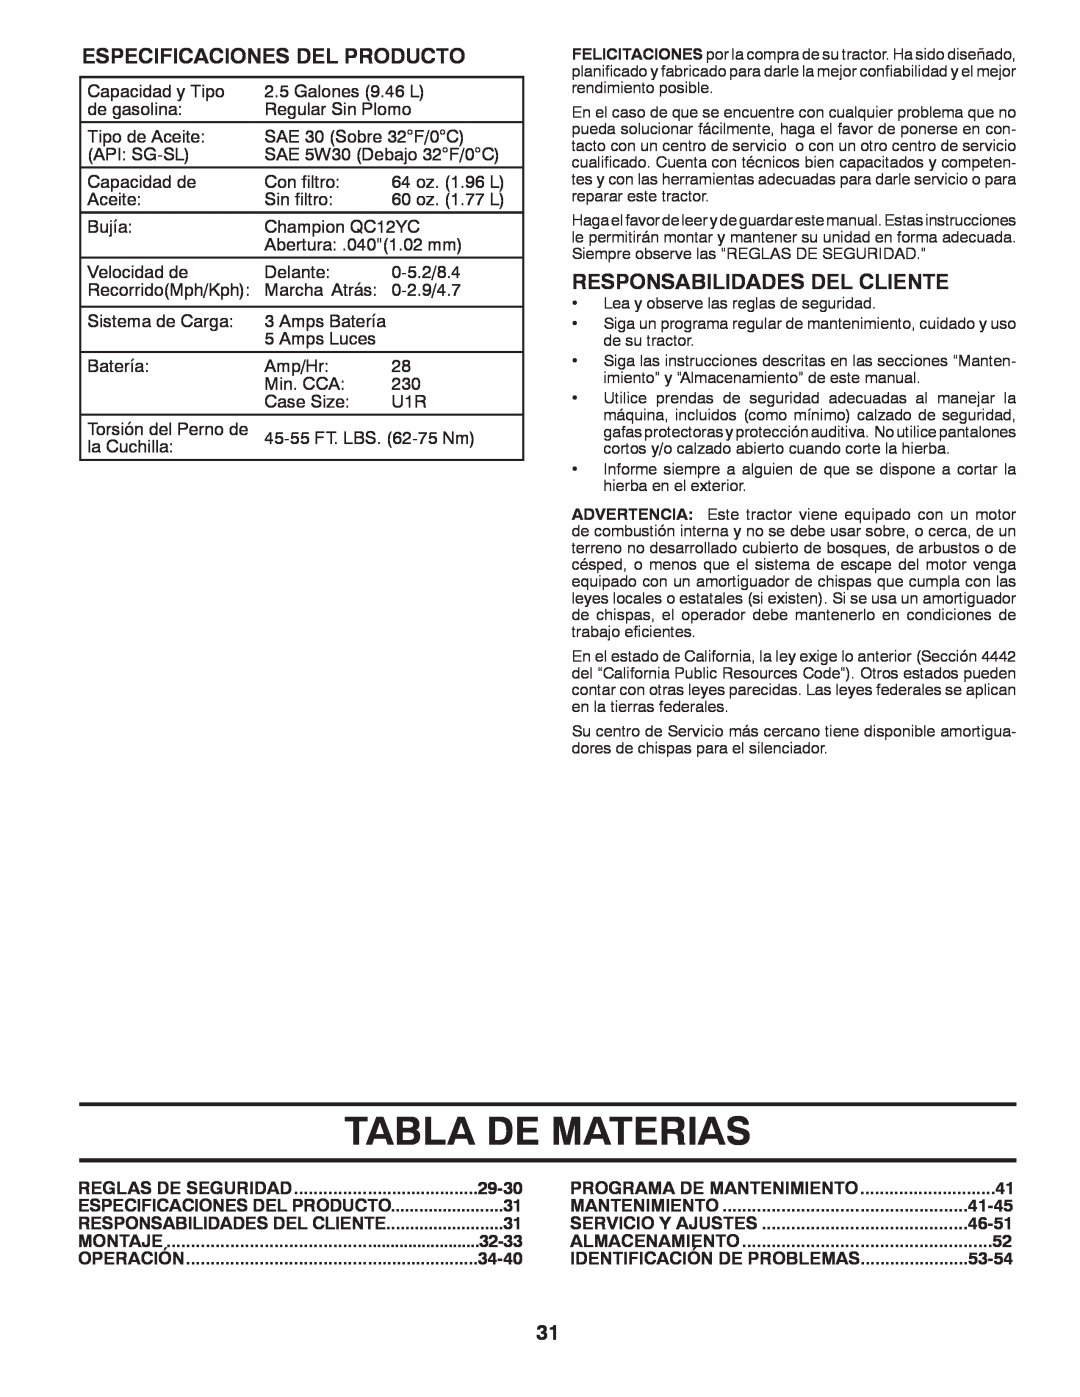 Husqvarna YTH22V42 warranty Tabla De Materias, Especificaciones Del Producto, Responsabilidades Del Cliente 